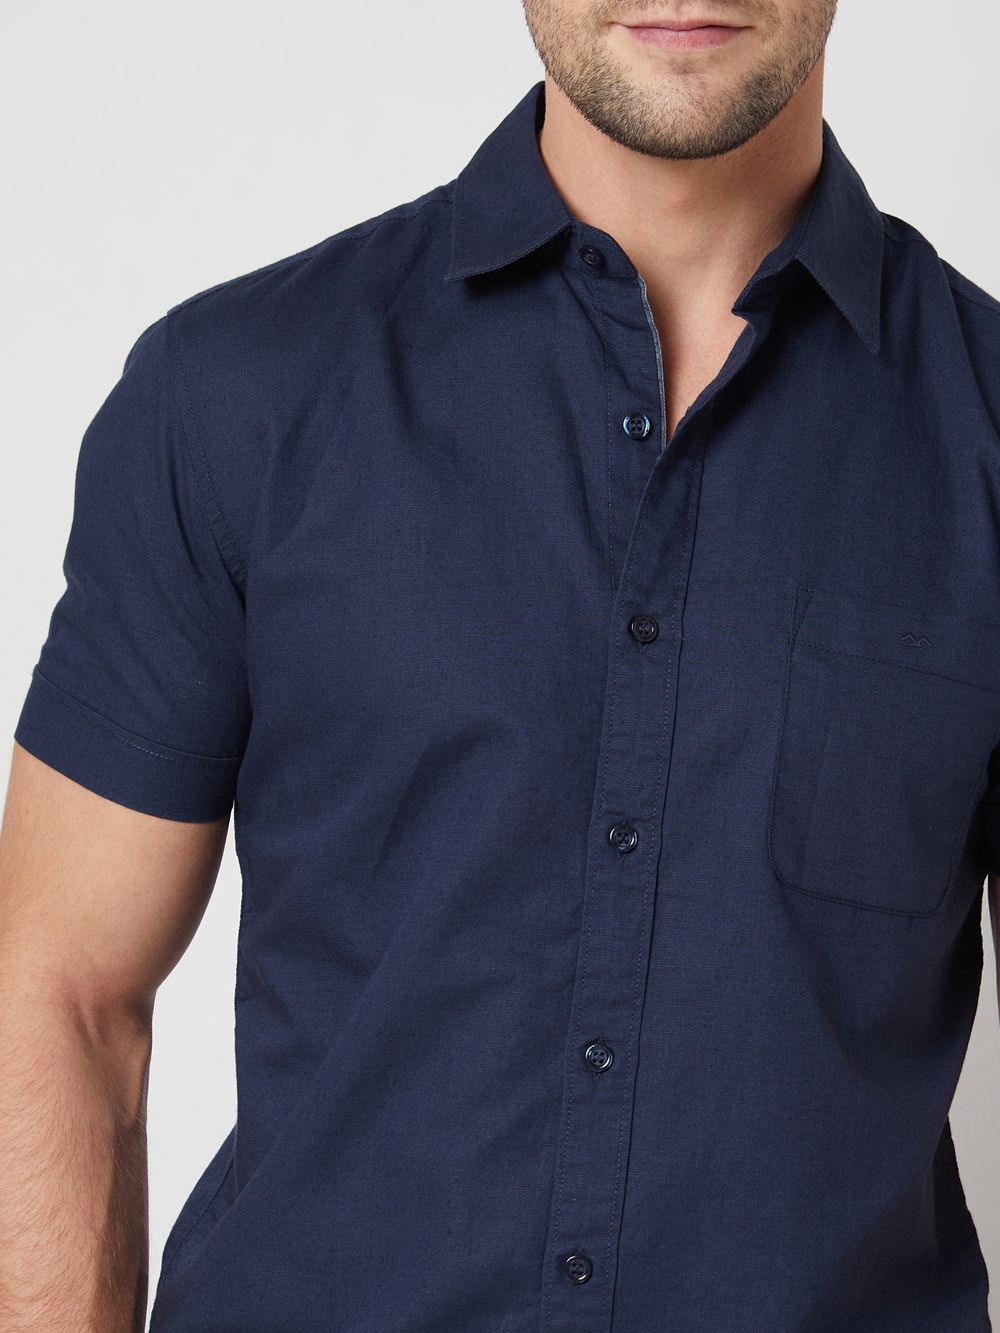 Navy Cotton Linen Plain Slim Fit Casual Shirt